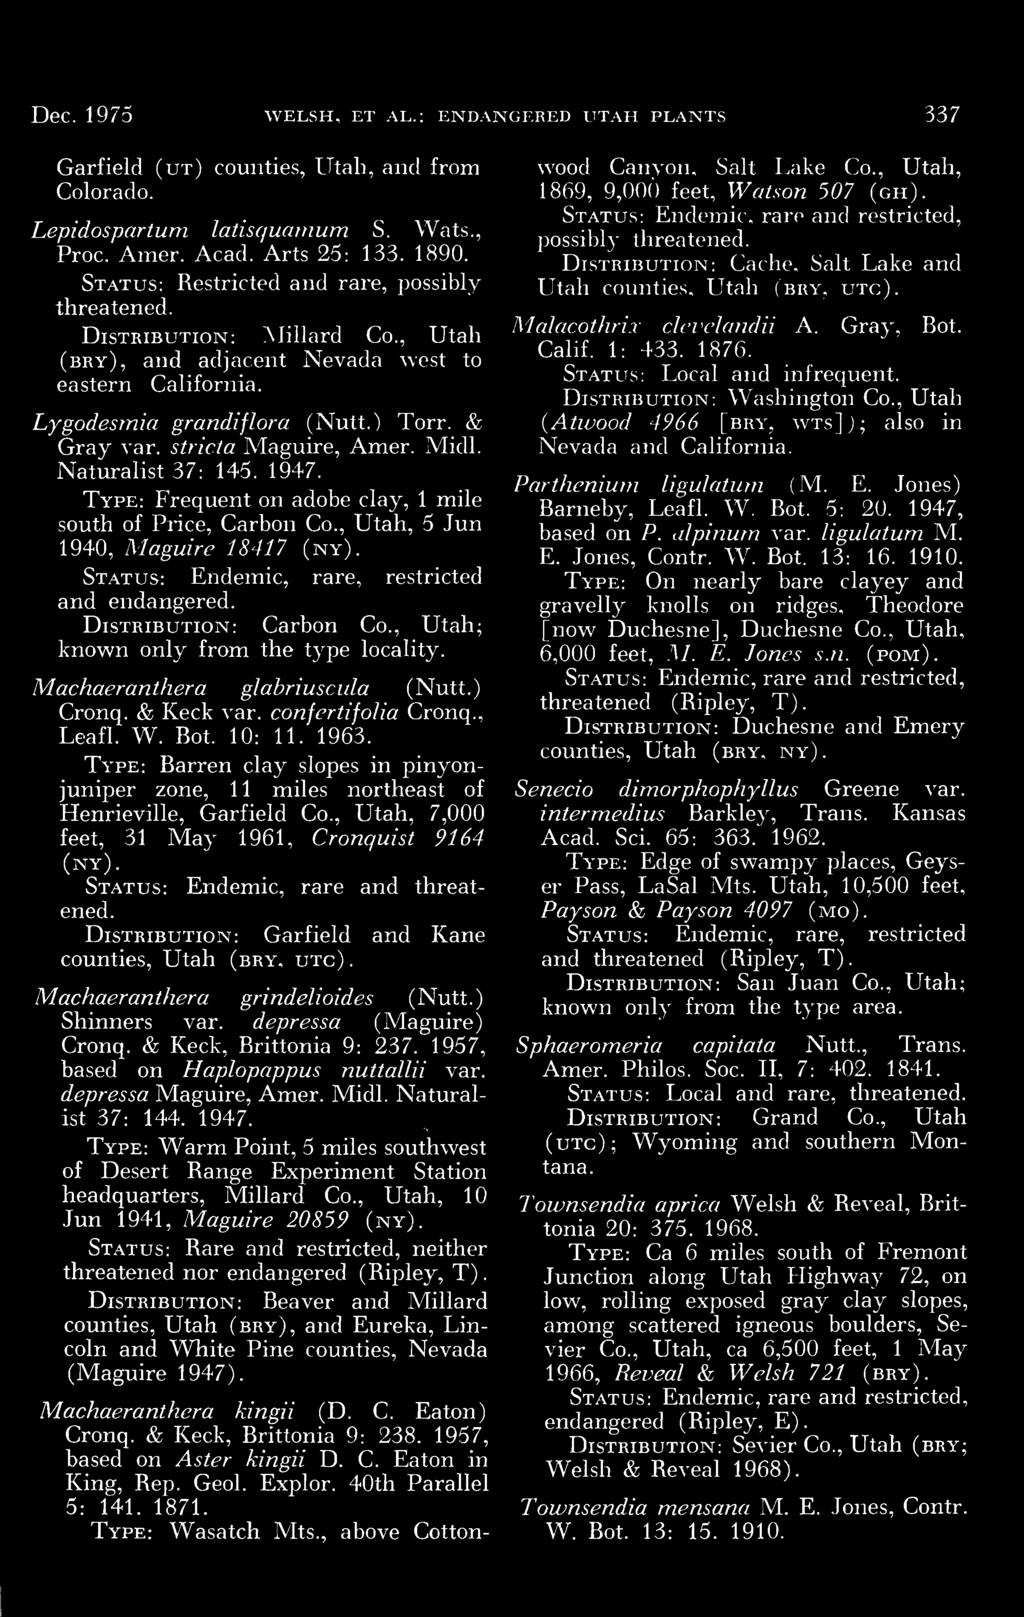 Henrieville, Garfield Co, Utah, 7,000 feet, 31 May 1961, Cronquist 9164 (ny) Status: Endemic, rare and threatened Distribution: Garfield and Kane counties, Utah (bry, utc) Machaeranthera